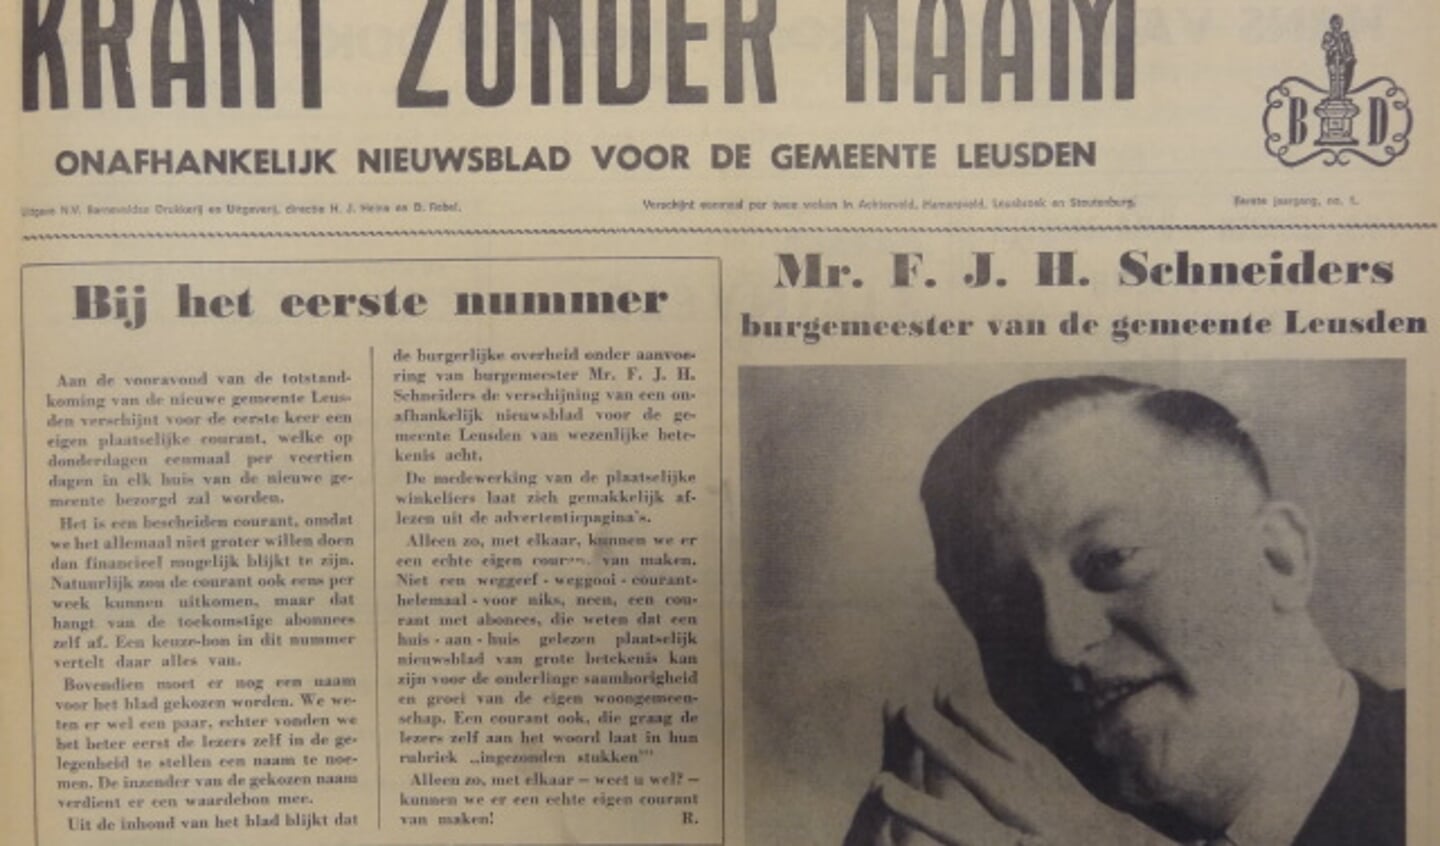 De eerste editie van de Leusder Krant verscheen 50 jaar geleden nog als 'Krant zonder naam'. 